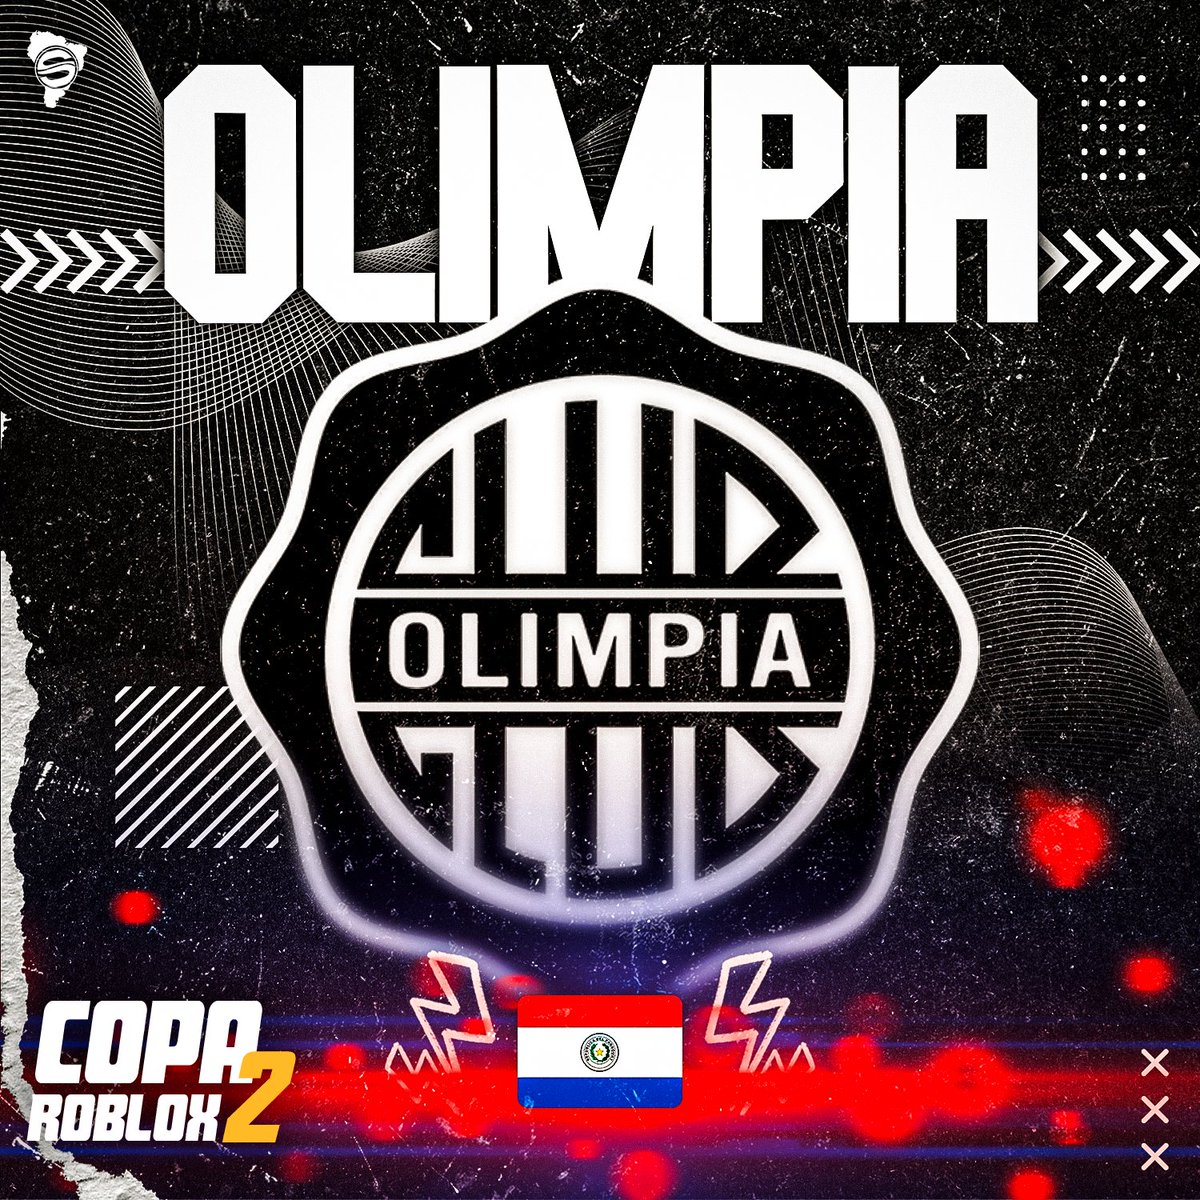 El Decano! ⚪️⚫️ Olimpia es el único representante de Paraguay en la Copa Roblox! 🇵🇾 ¿Los olímpistas estan optimistas sobre el equipo que participará en el torneo? #CopaRoblox2 🏆